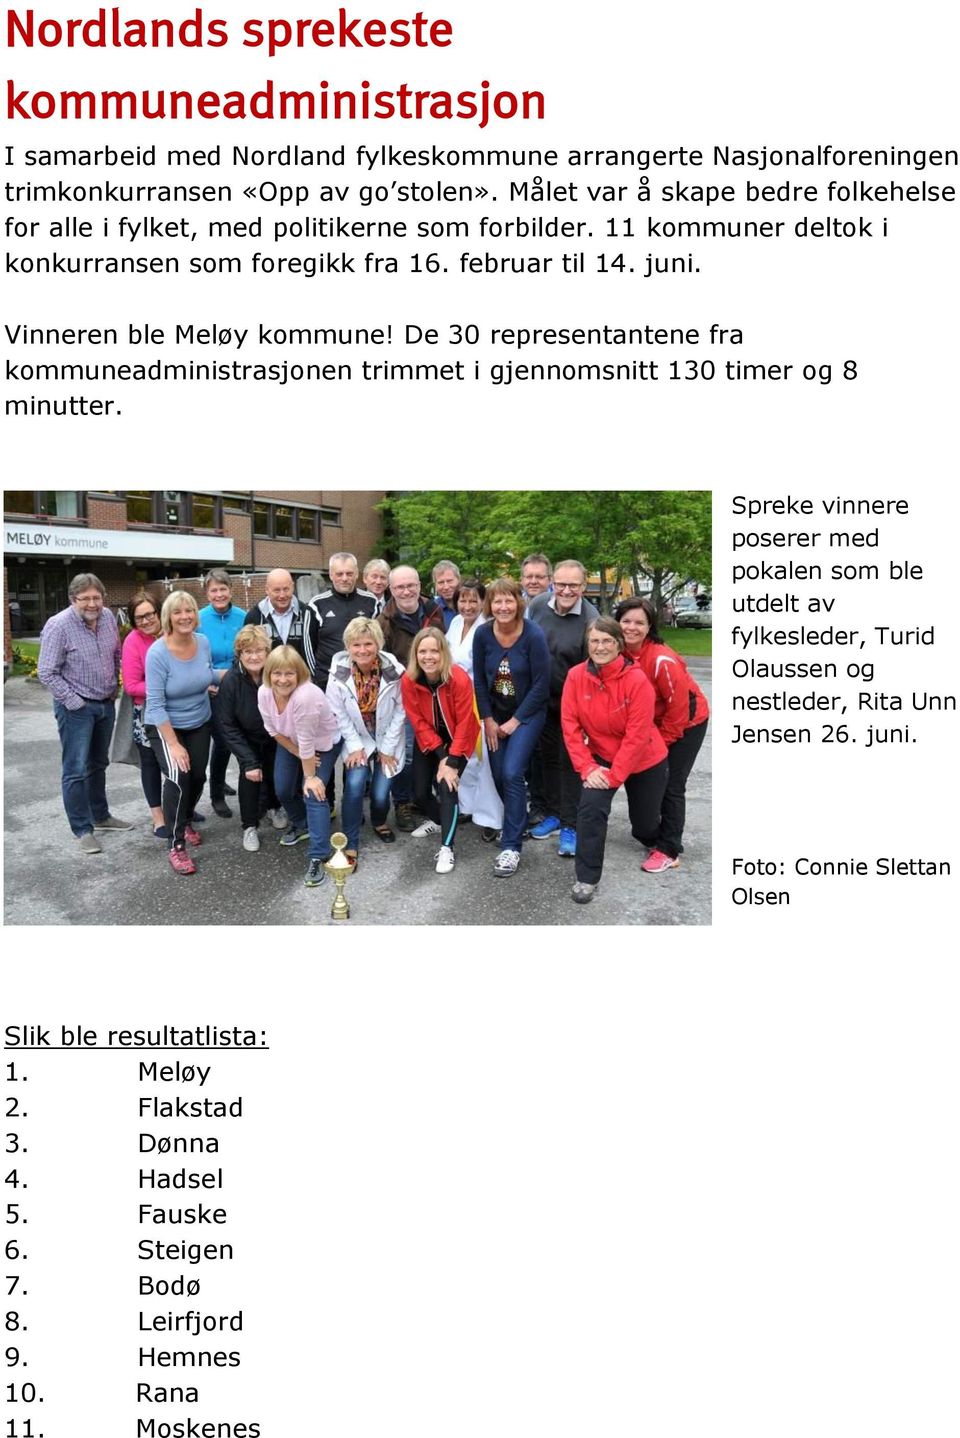 Vinneren ble Meløy kommune! De 30 representantene fra kommuneadministrasjonen trimmet i gjennomsnitt 130 timer og 8 minutter.